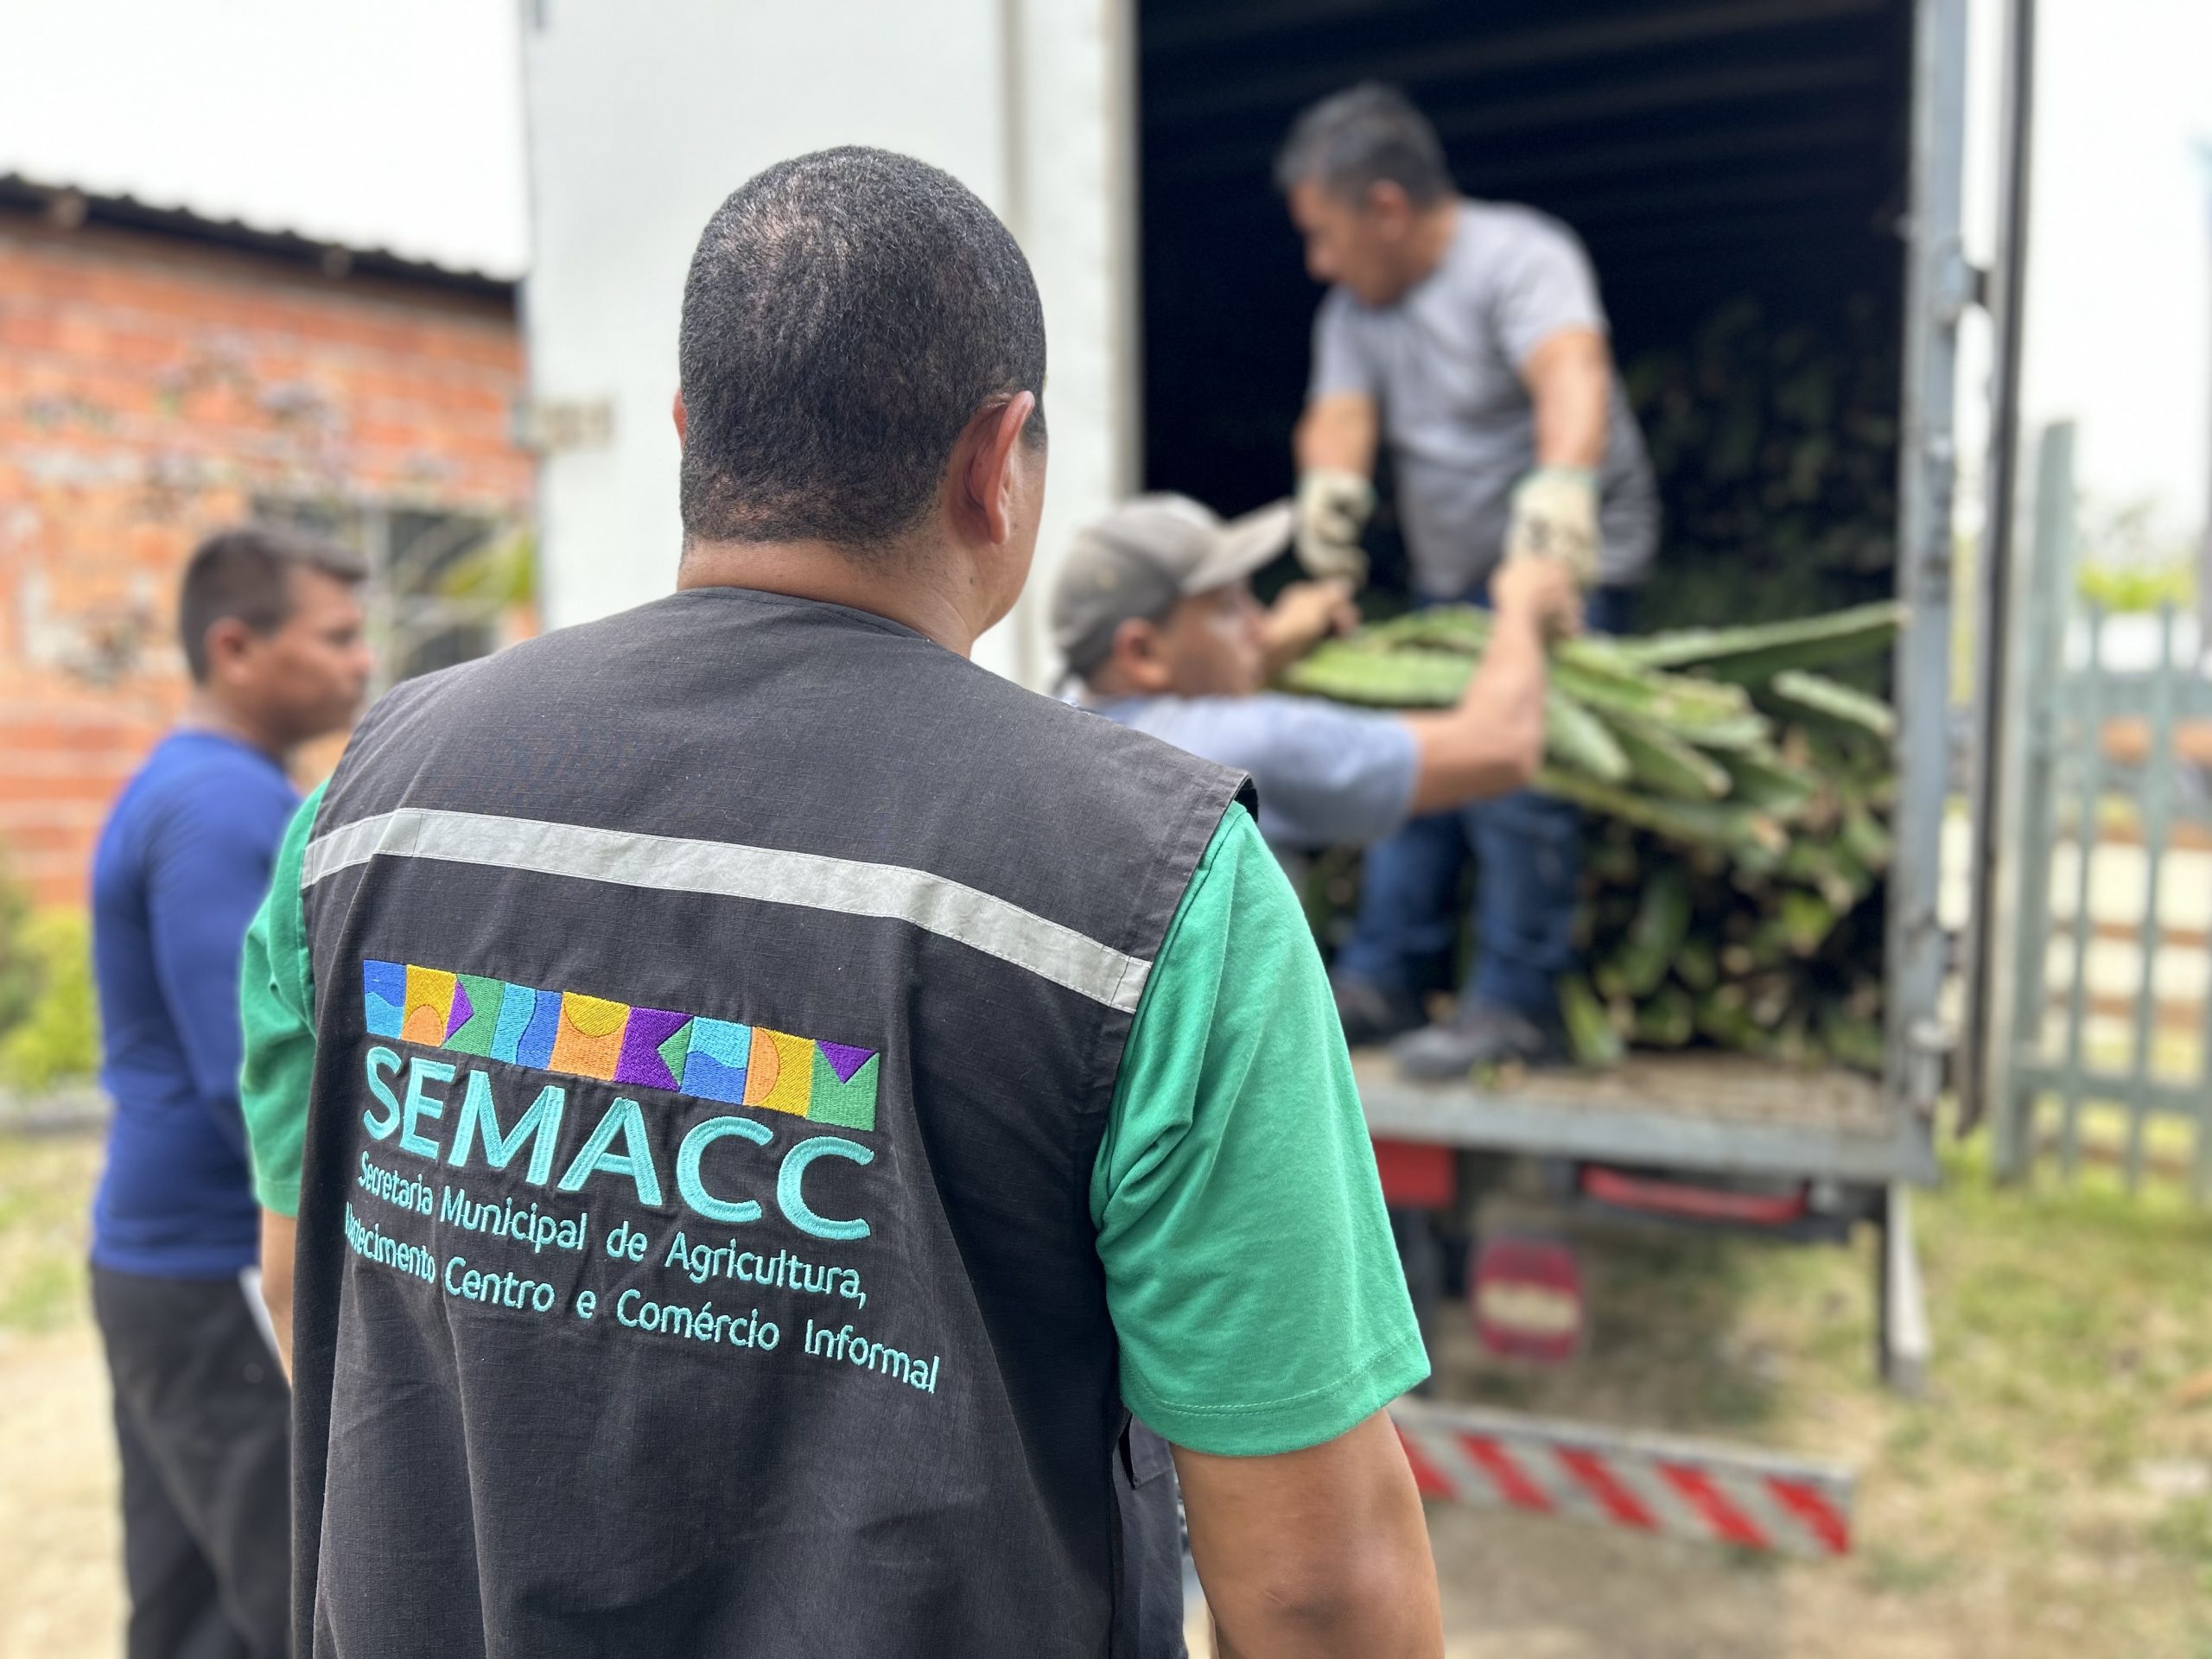 Prefeitura de Manaus distribuiu no primeiro trimestre cerca de 25 mil mudas de pitaya para fomentar a agricultura familiar 2 scaled 1